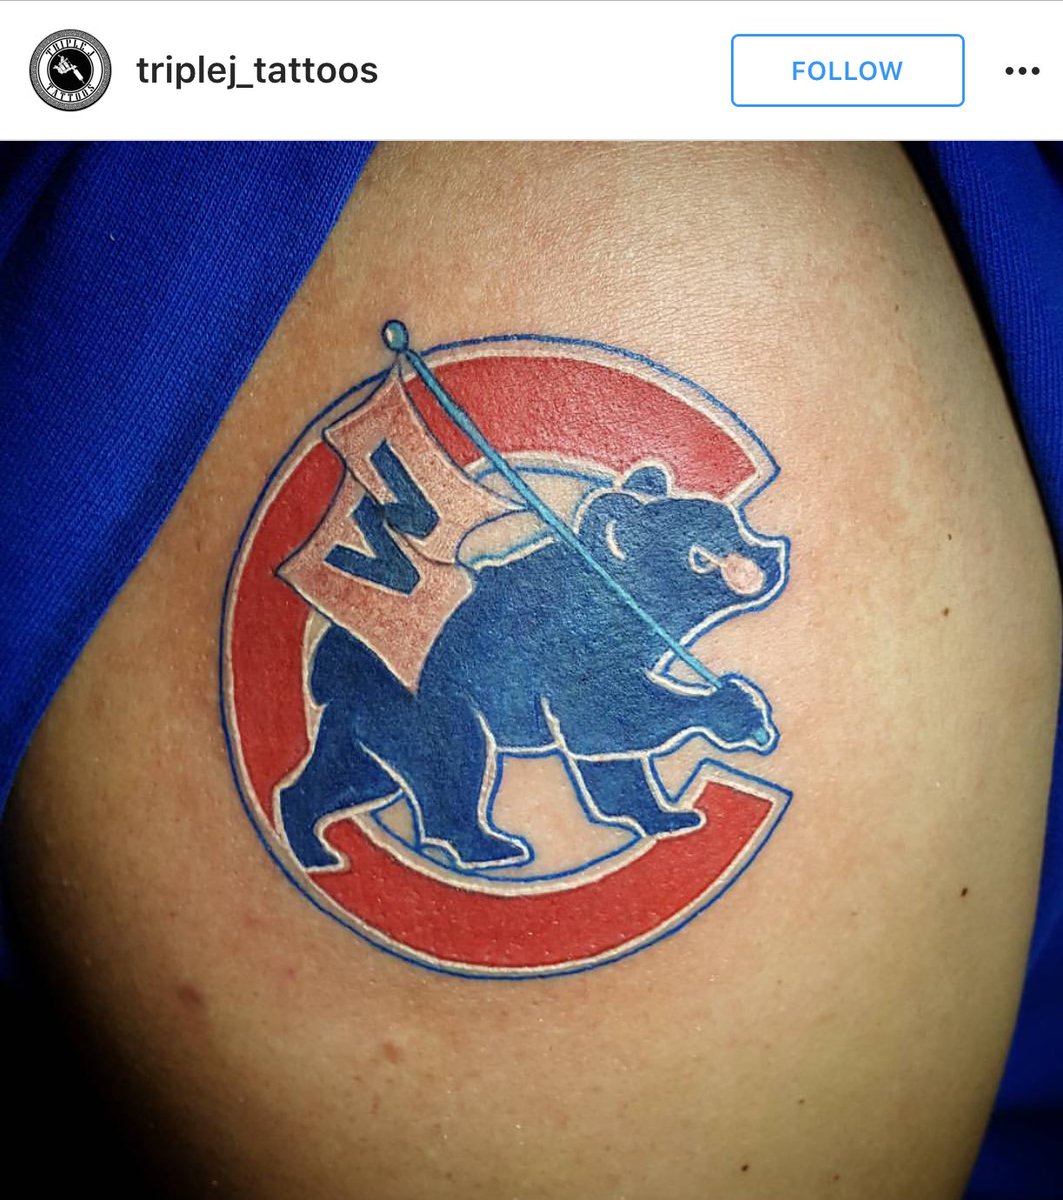 Tattoos Chicago Cubs : Tattoos Chicago Cubs fans week Scoopnest.